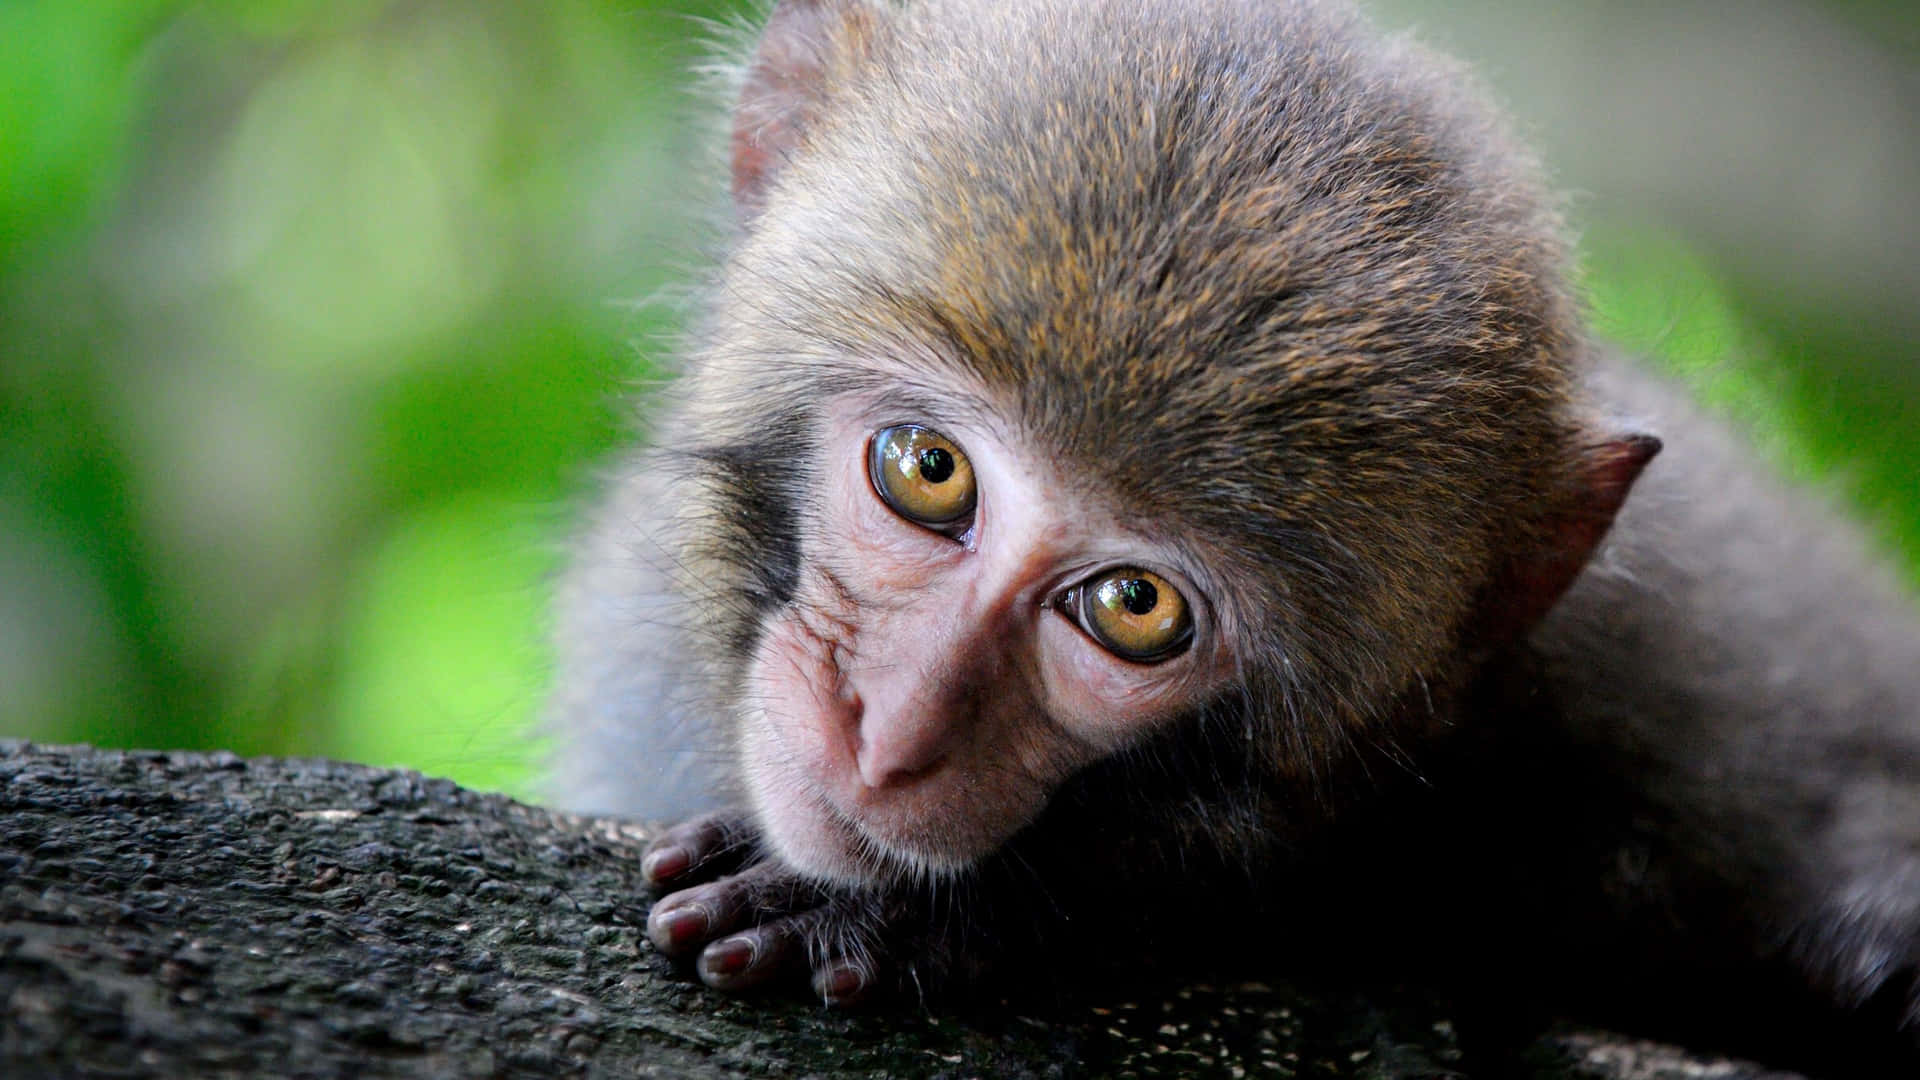 Leaning Cute Monkey Photo Wallpaper